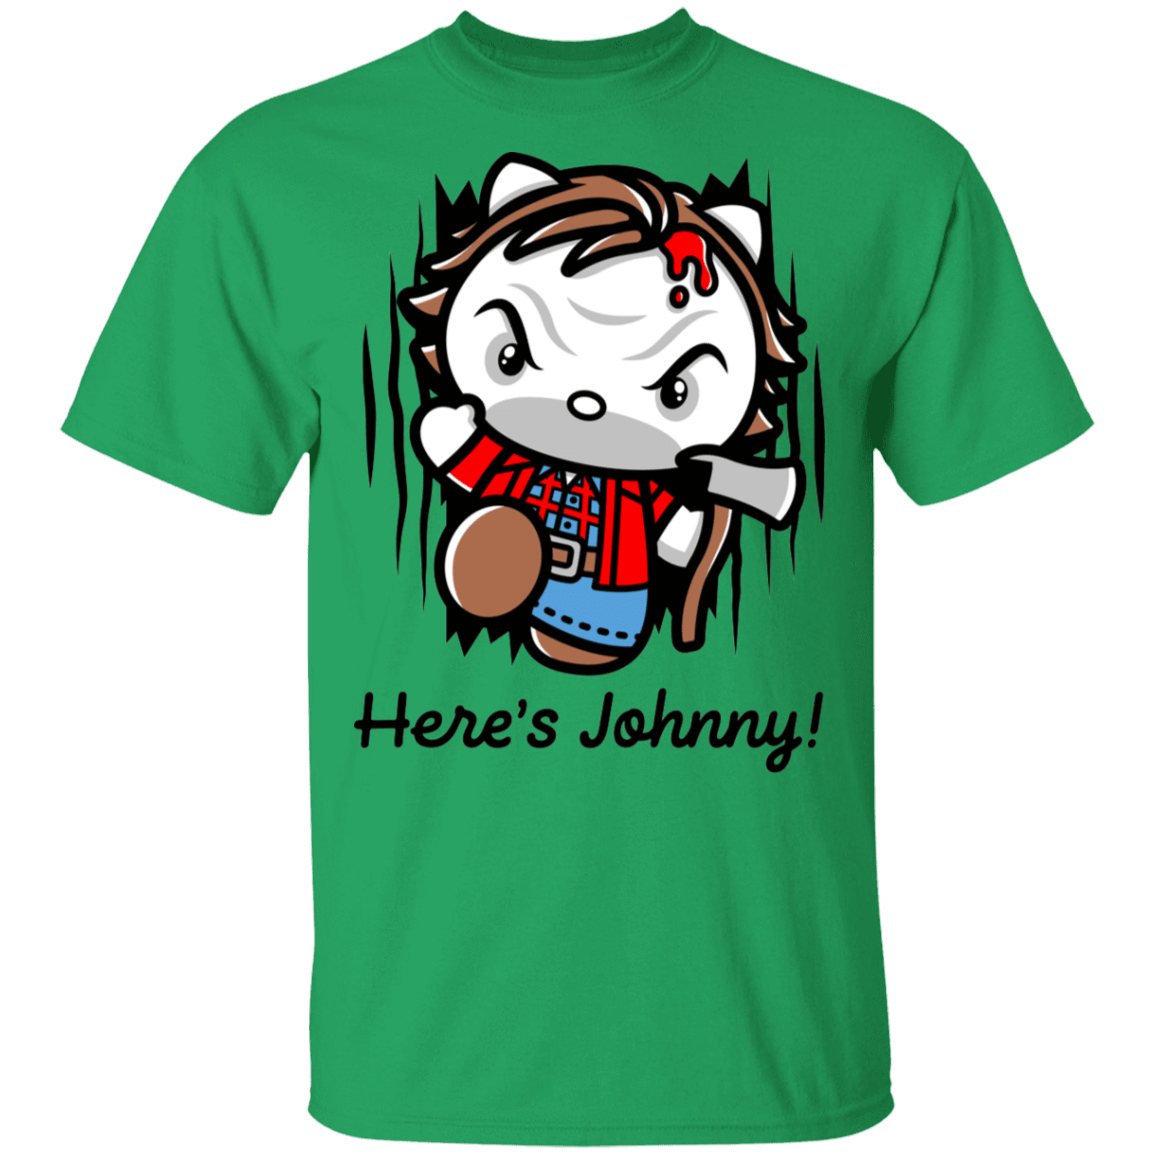 T-Shirts Irish Green / S Heres Johnny Kitty T-Shirt